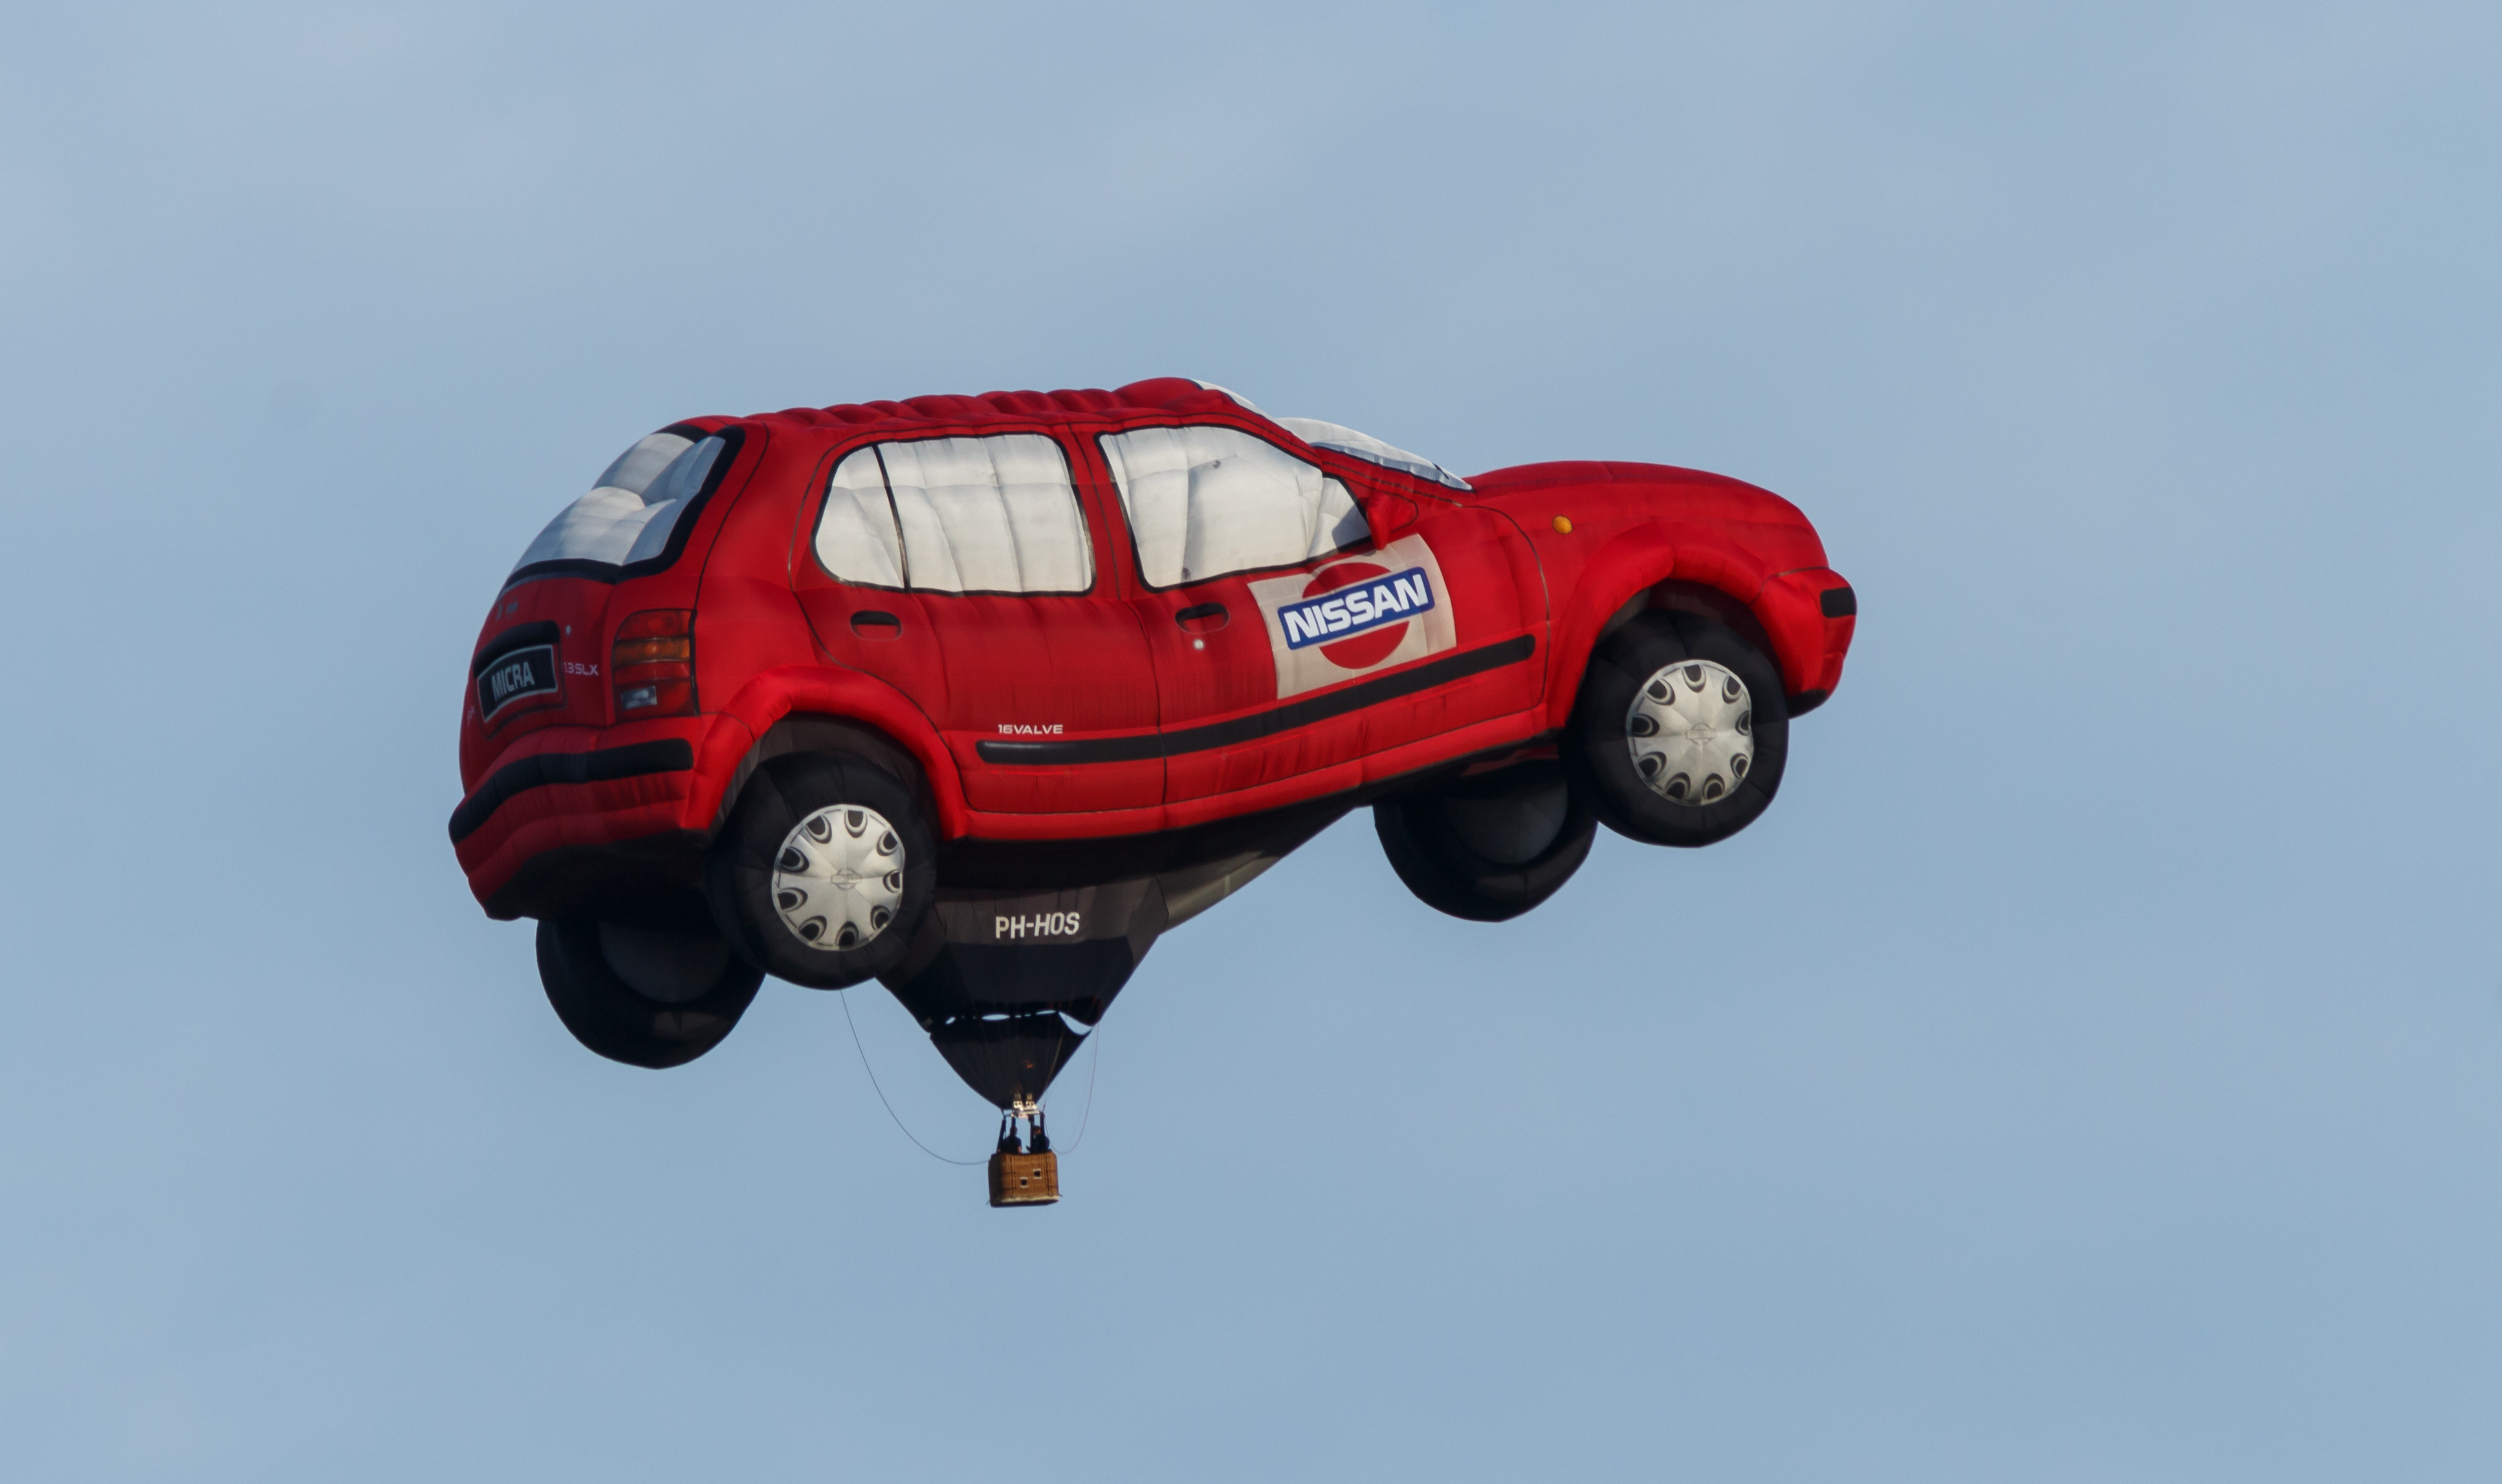 Ballon PH-HOS van Nissan op de Jaarlijkse Friese ballonfeesten in Joure 01